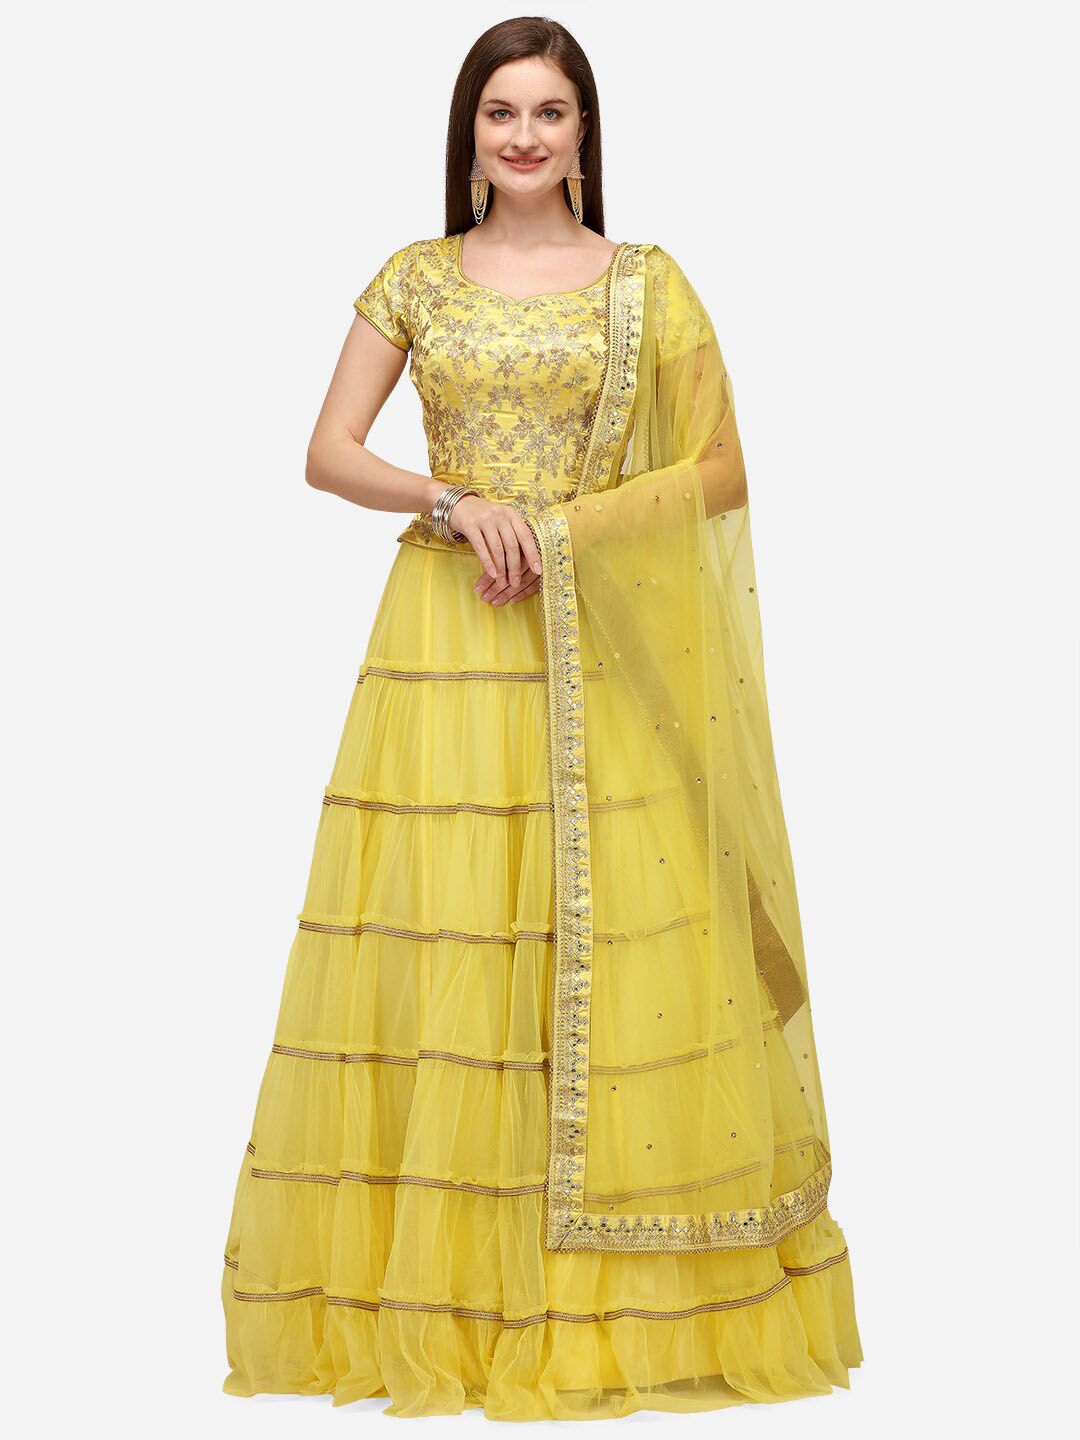 NAKKASHI Yellow Embellished Semi-Stitched Lehenga & Unstitched Blouse With Dupatta Price in India